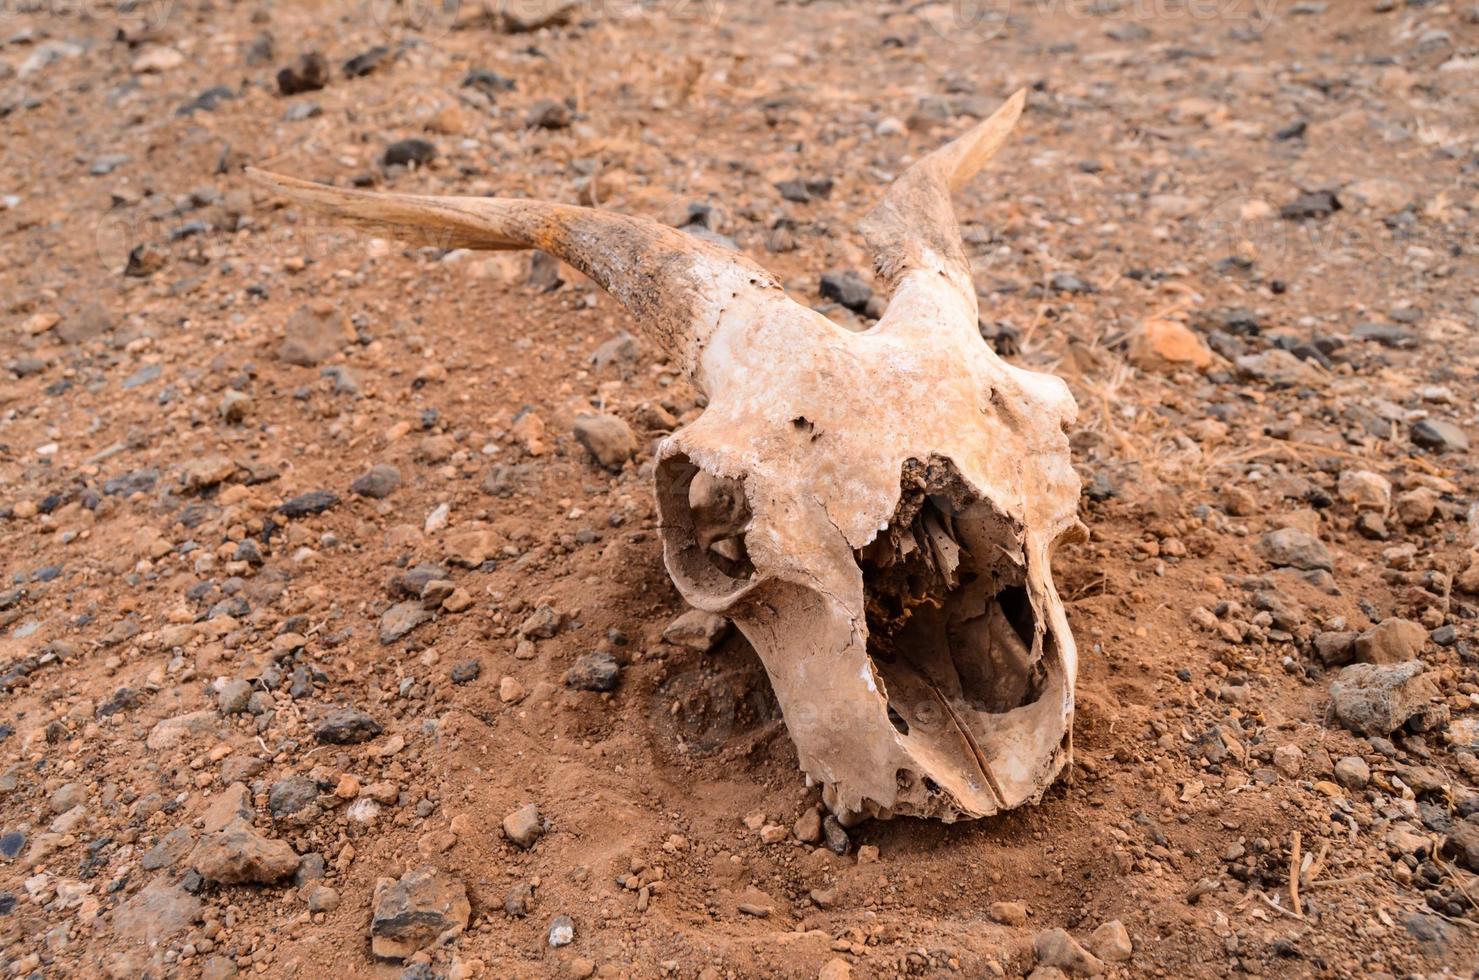 cráneo de carnero en el suelo foto